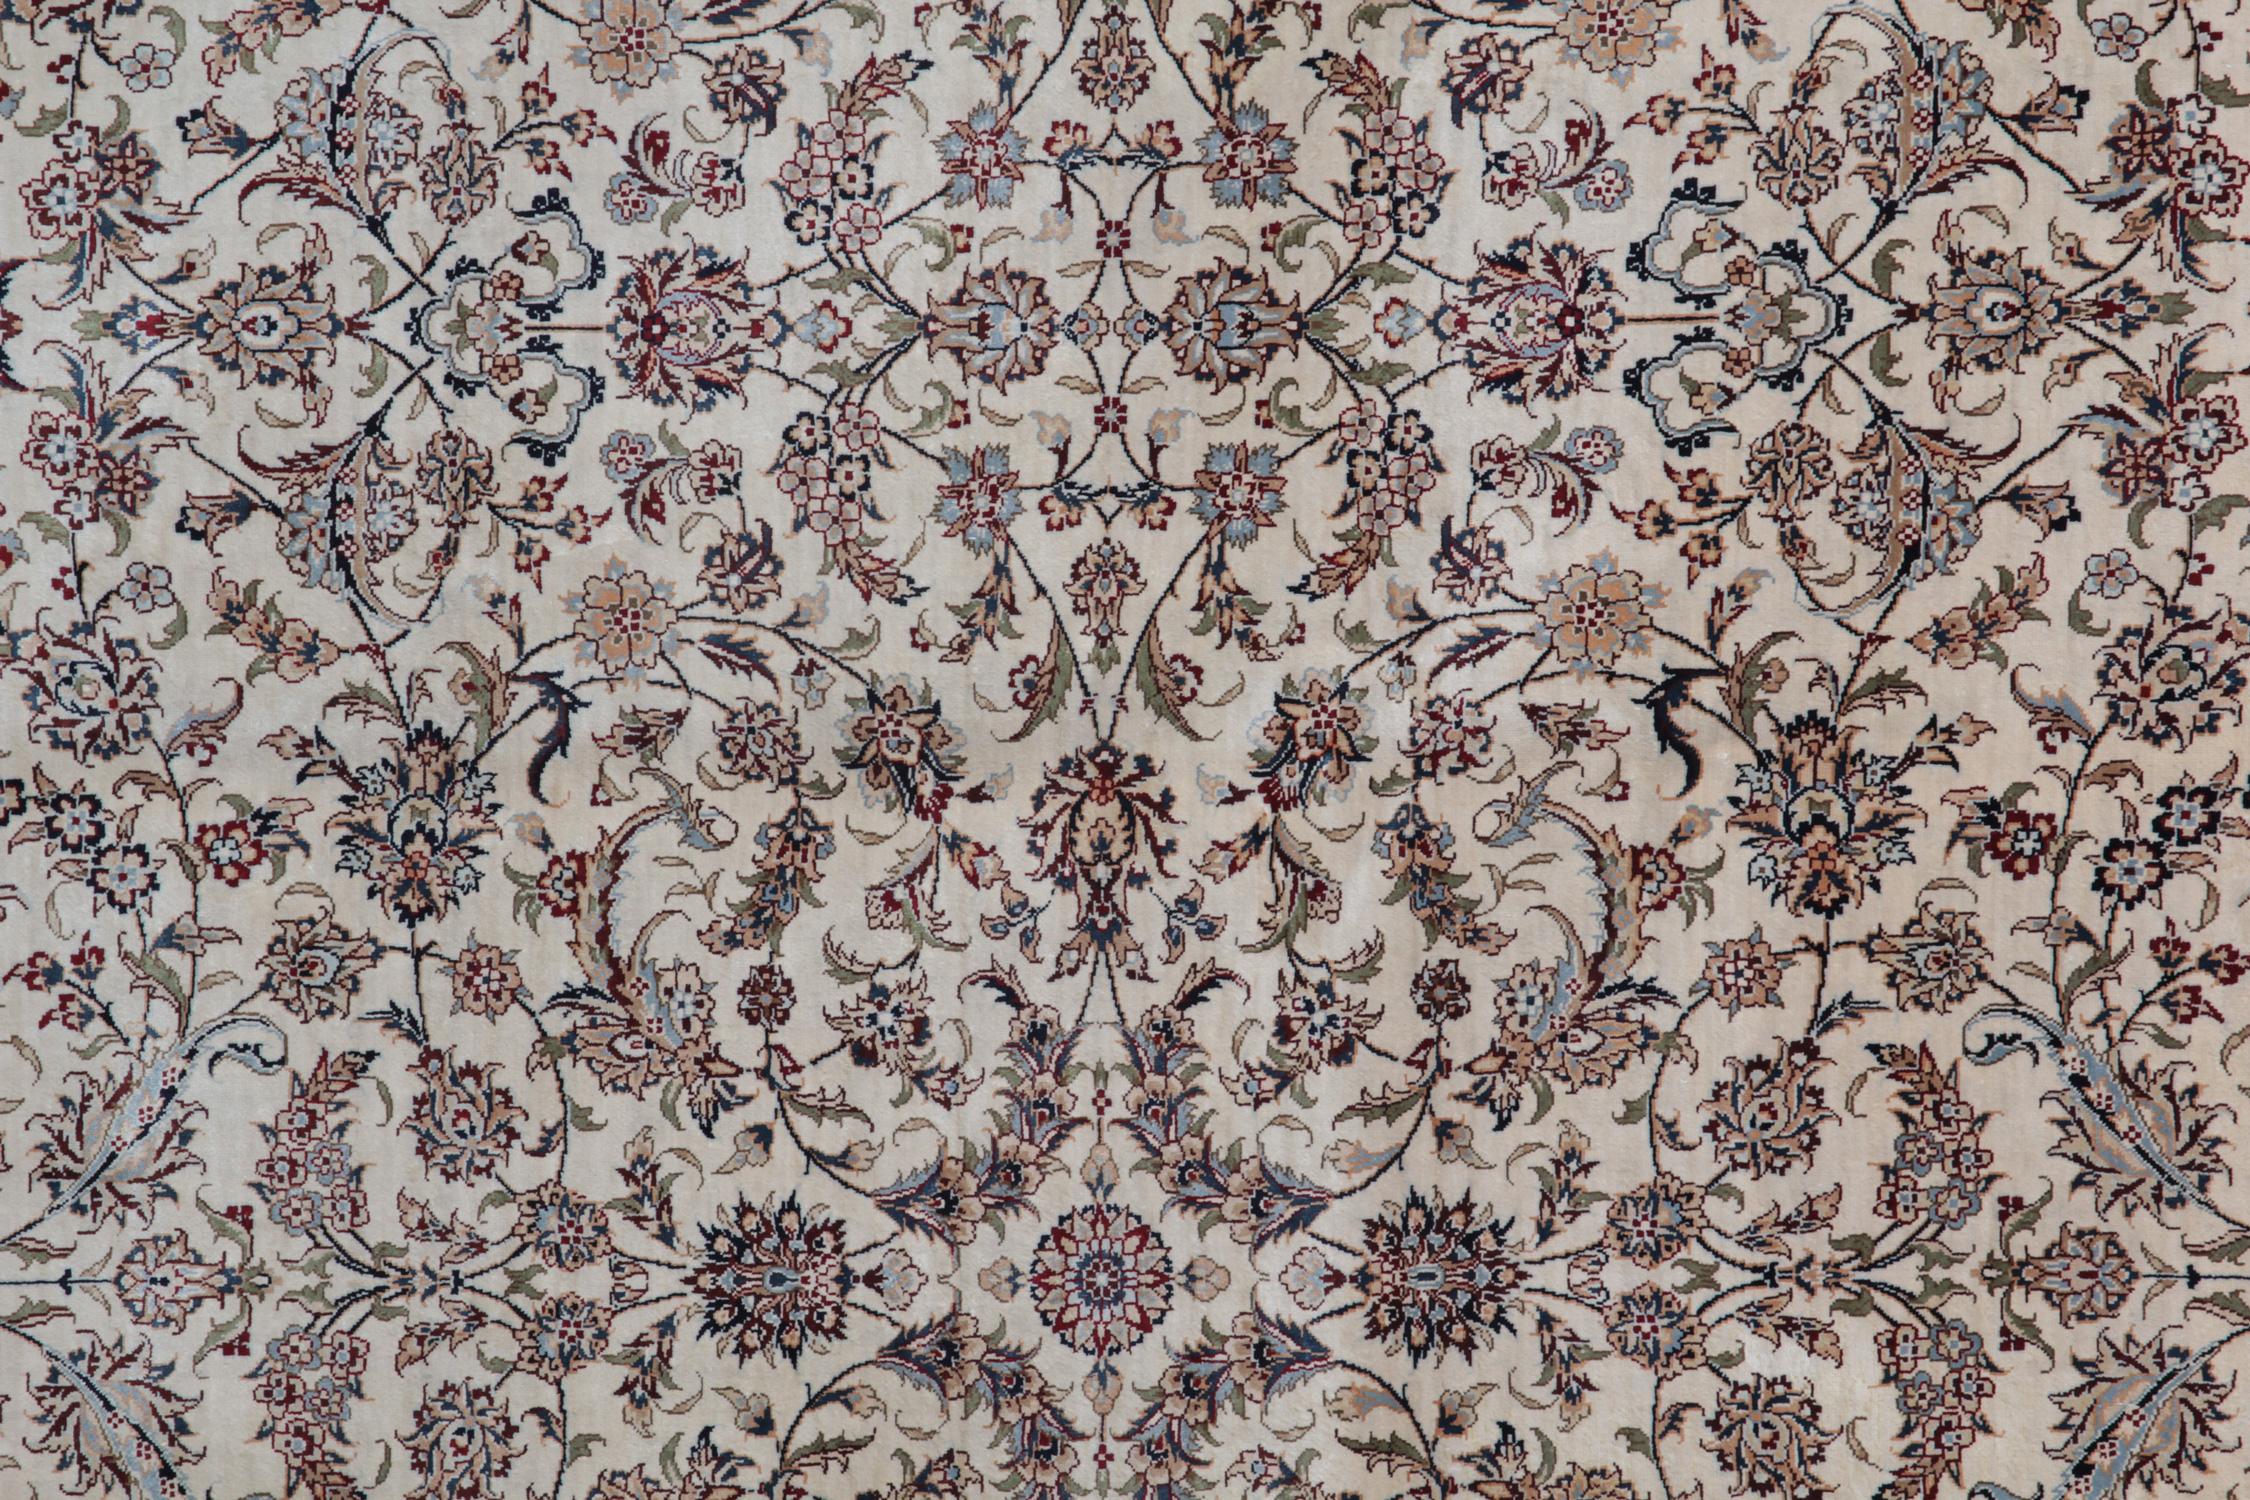 Dieser cremefarbene Teppich ist ein feiner chinesischer Teppich mit All-Over-Design und höchster Qualität aus reiner Bio-Seide und pflanzlichen Farbstoffen. Die Farbpalette ist eine Kombination aus grauen Teppichtönen. Von den Innenarchitekten als